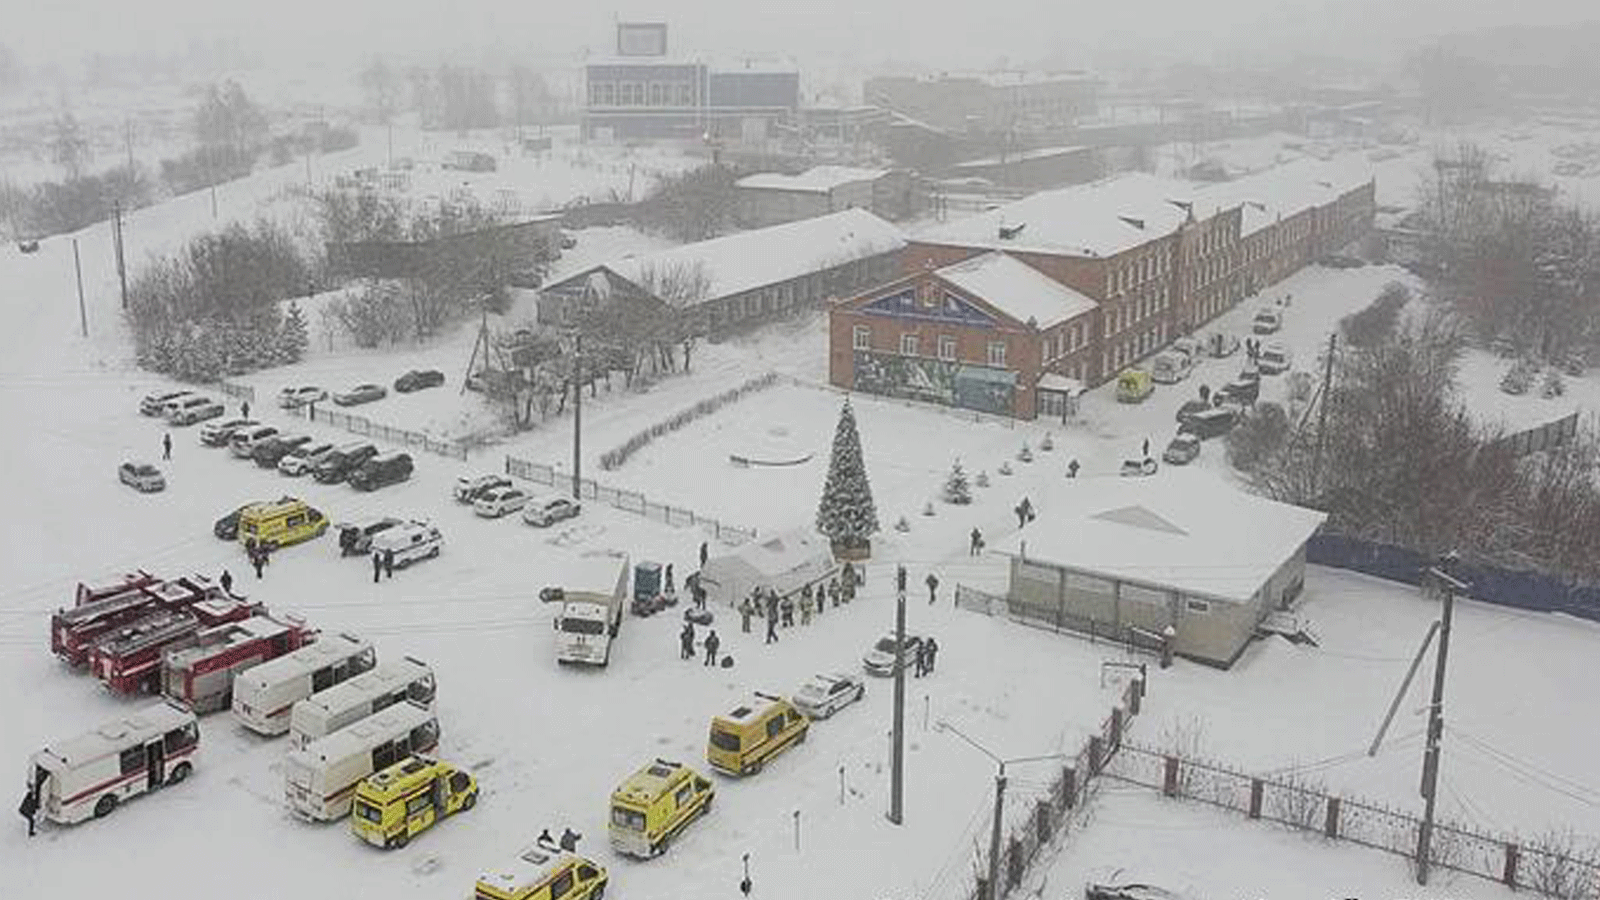  سيارات الإنقاذ تنتشر في منجم Listvyazhnaya في جنوب غرب سيبيريا(وكالة Tass)